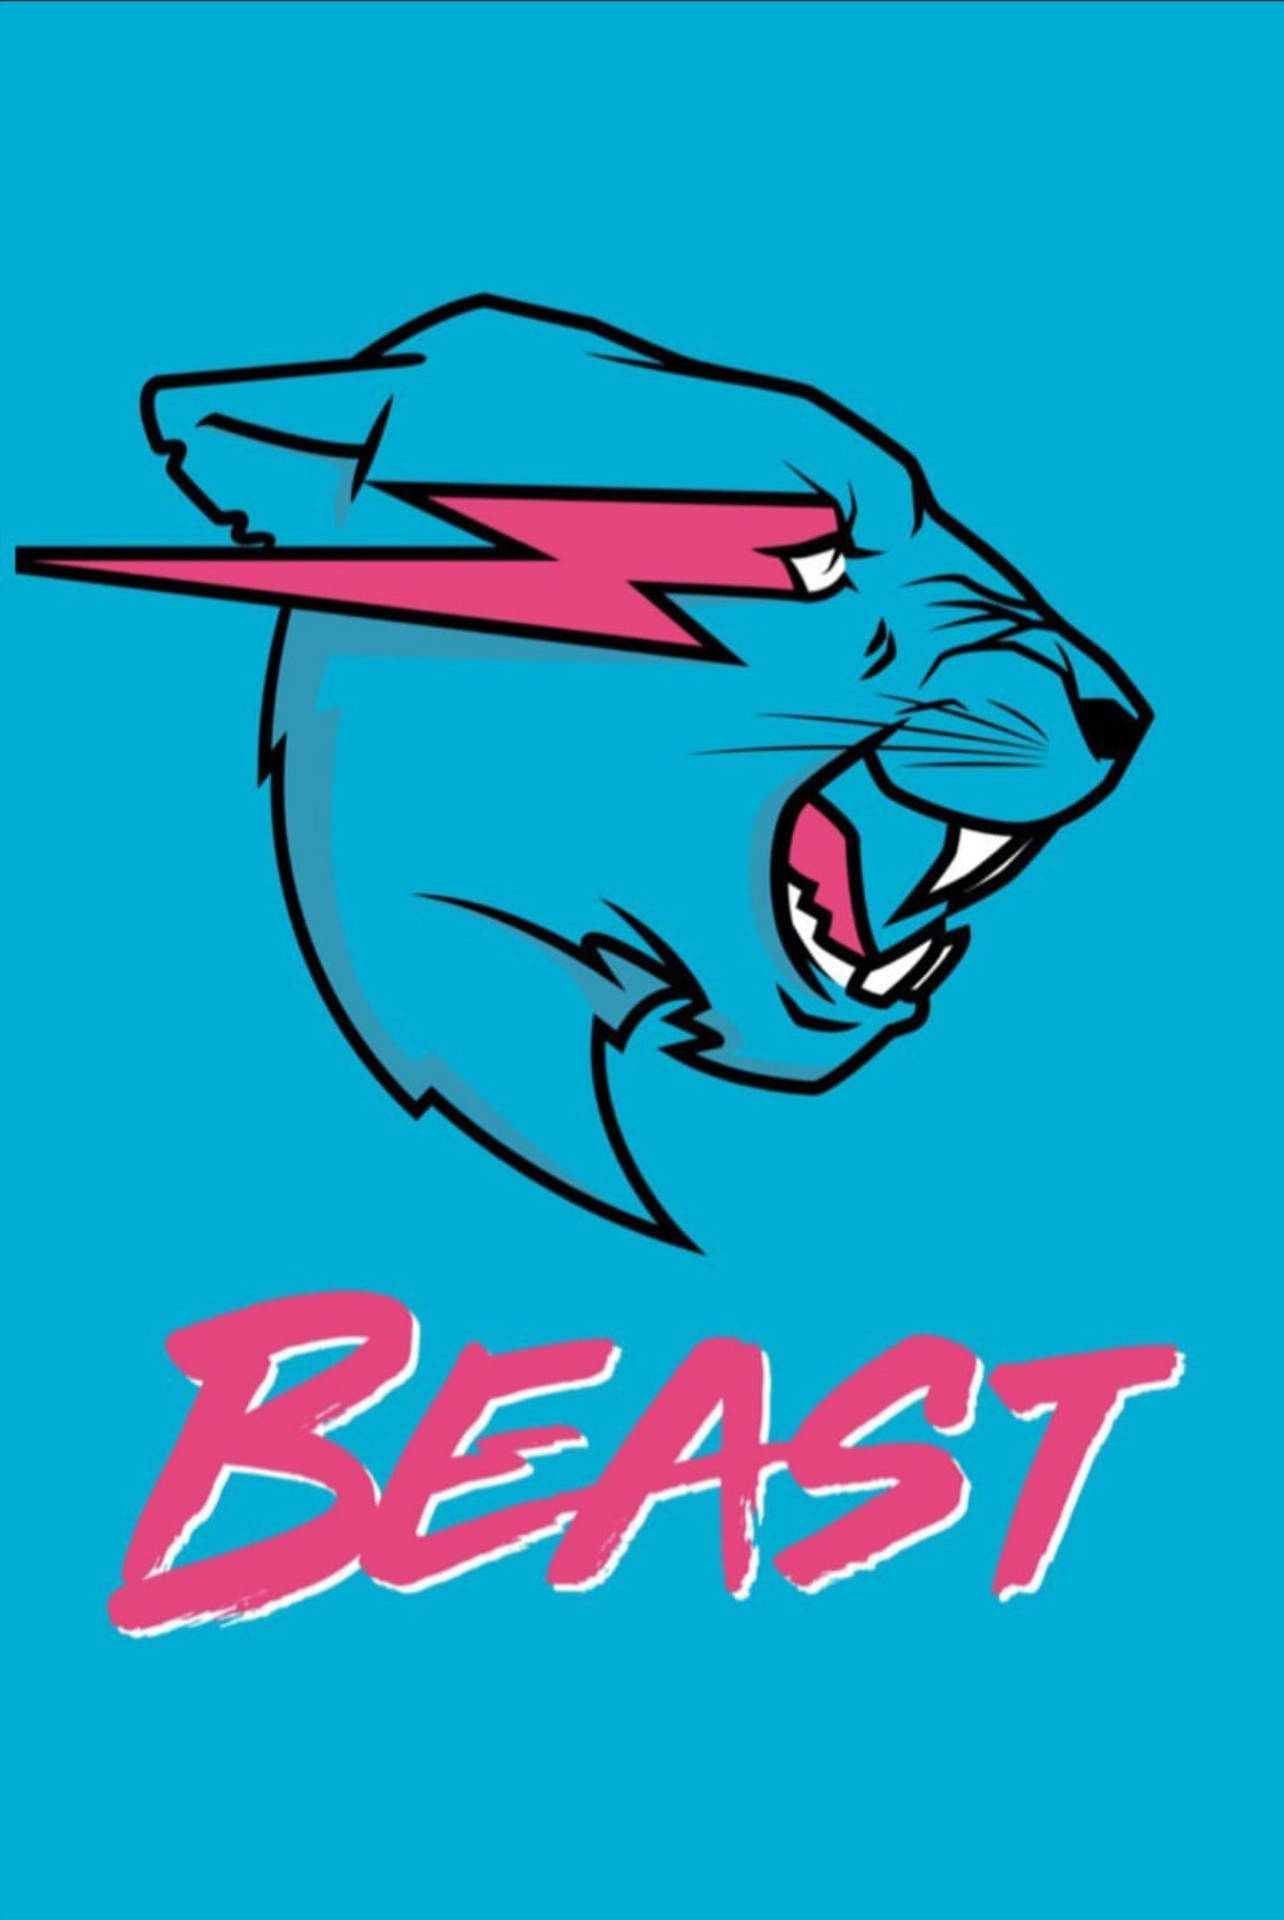 Mrbeast Logo Auf Blauem Hintergrund Wallpaper